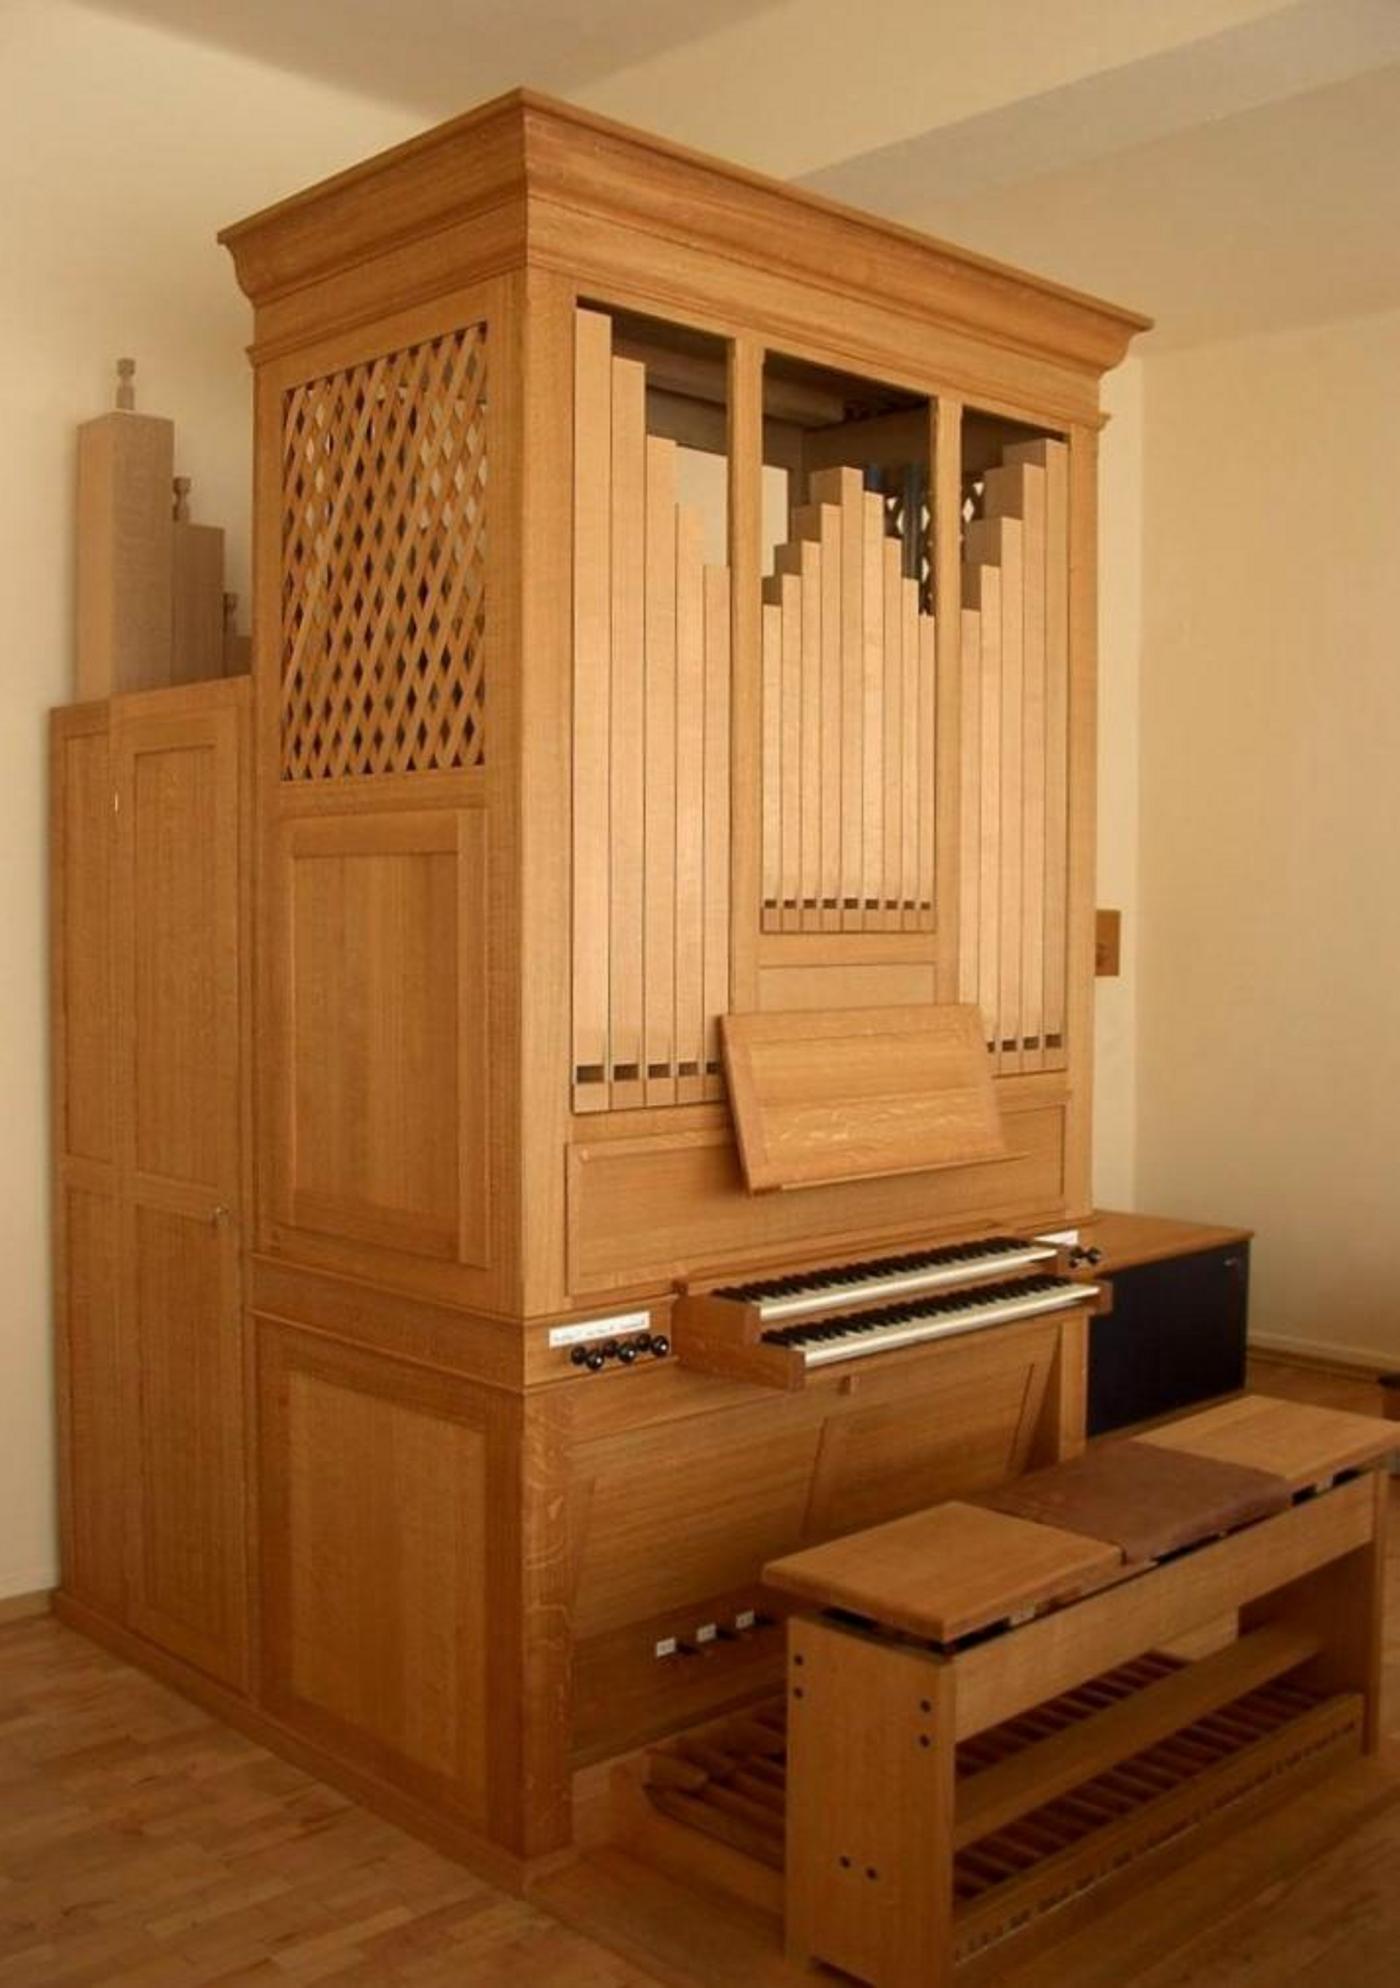 Sofia/Bulgarien, Neue Orgel der National Academy of Music, Jens Steinhoff Orgelbau